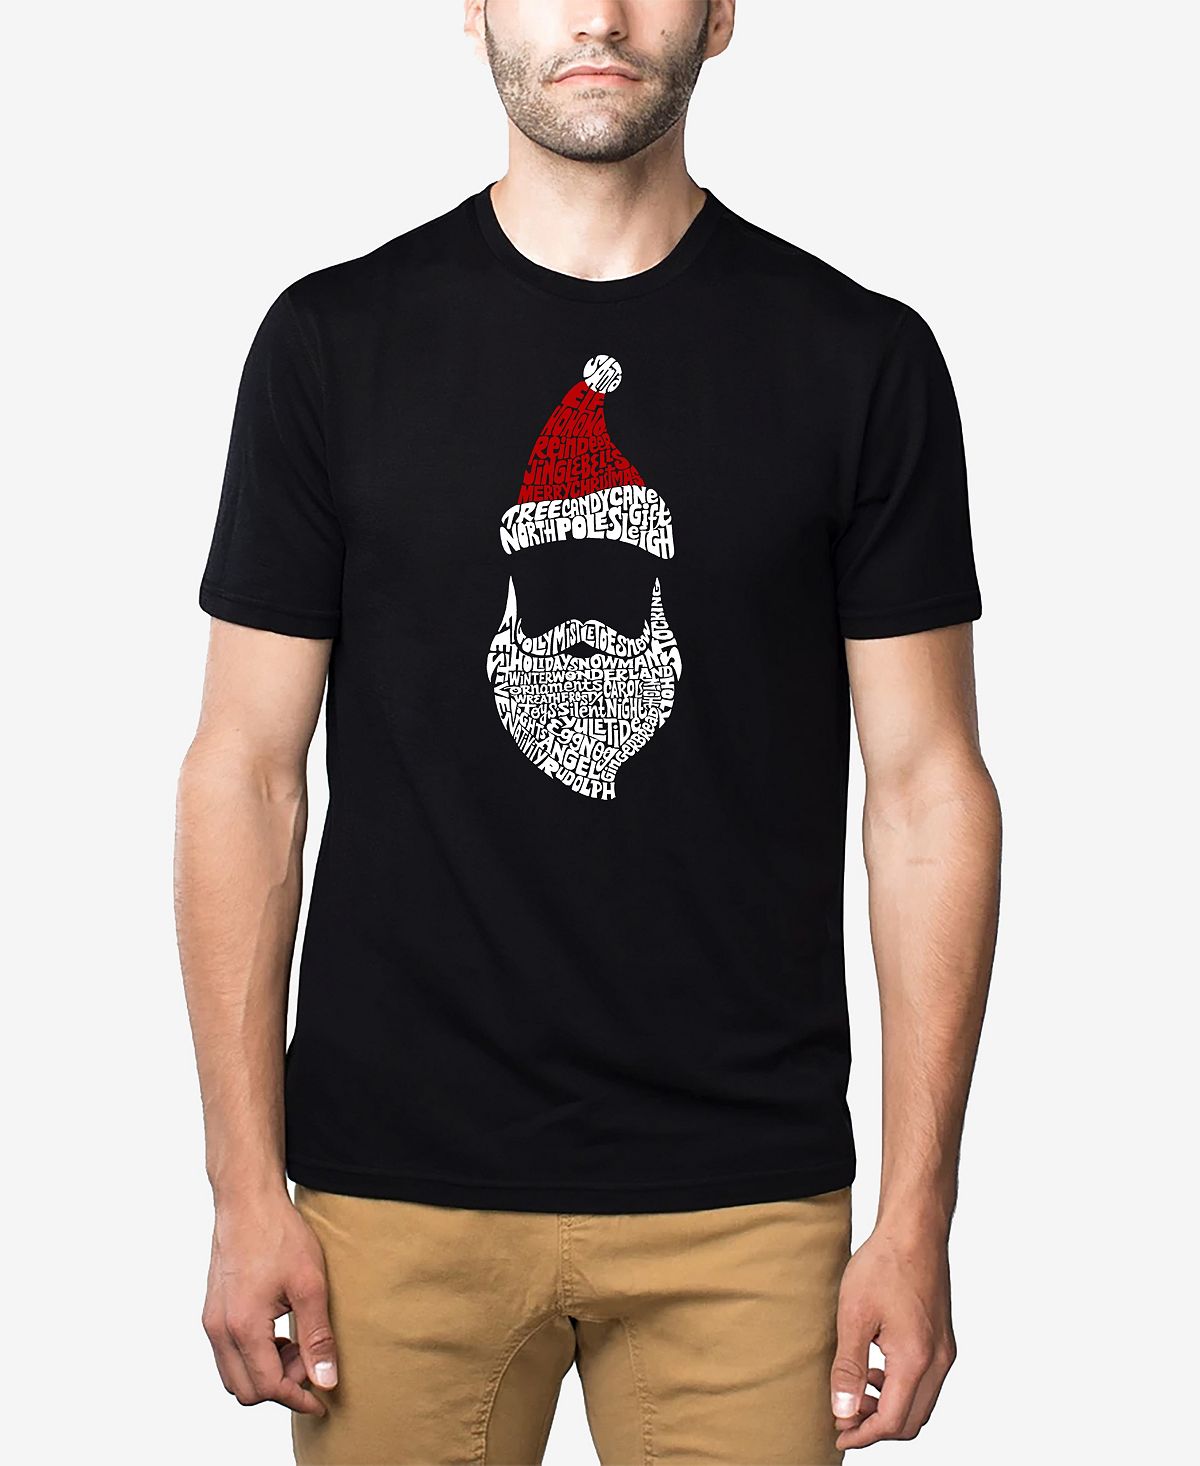 Мужская футболка premium blend santa claus word art LA Pop Art, черный